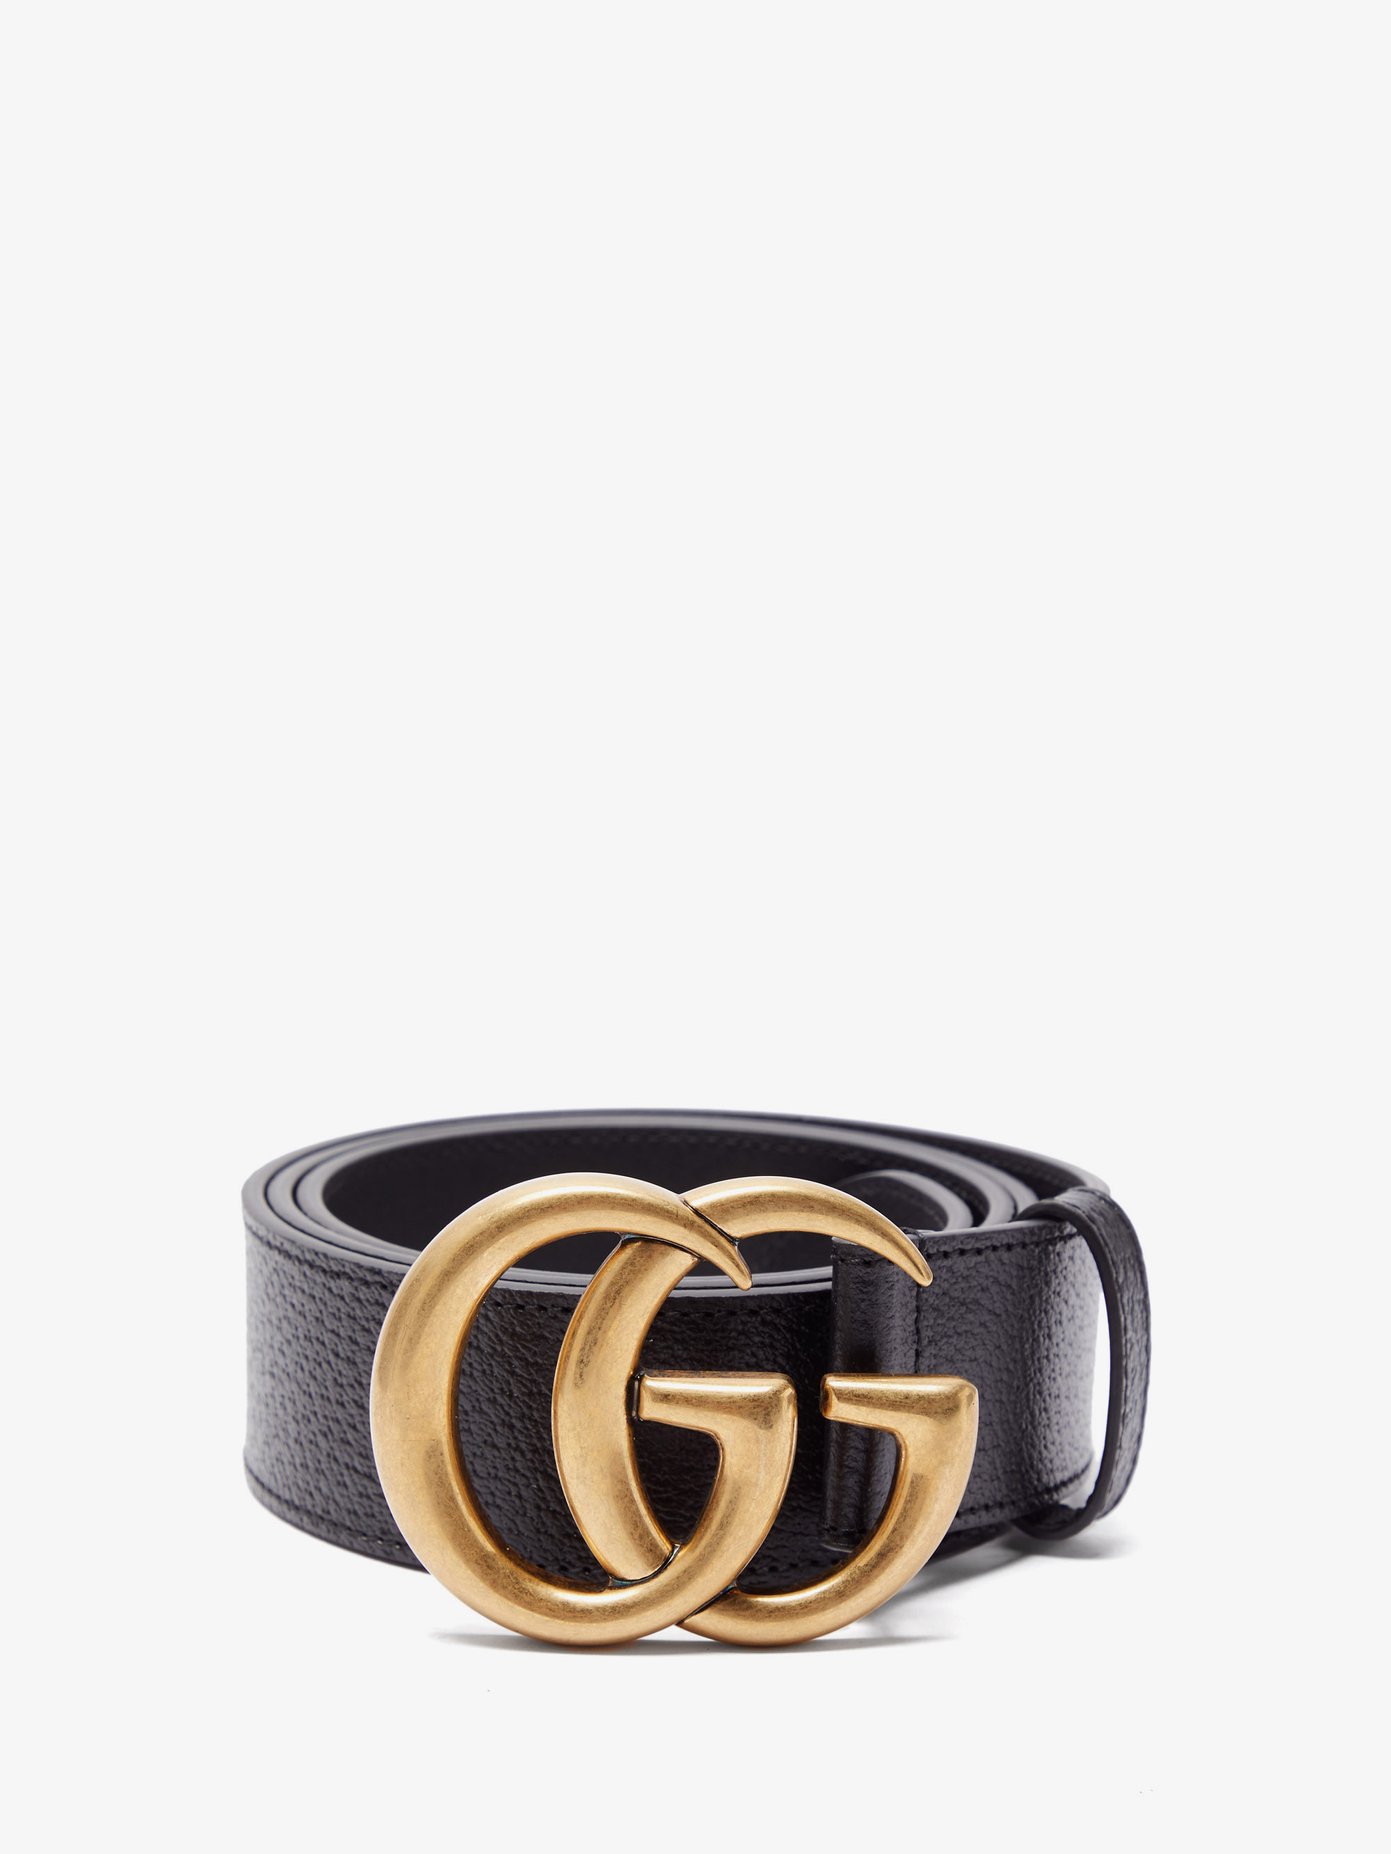 the gg belt